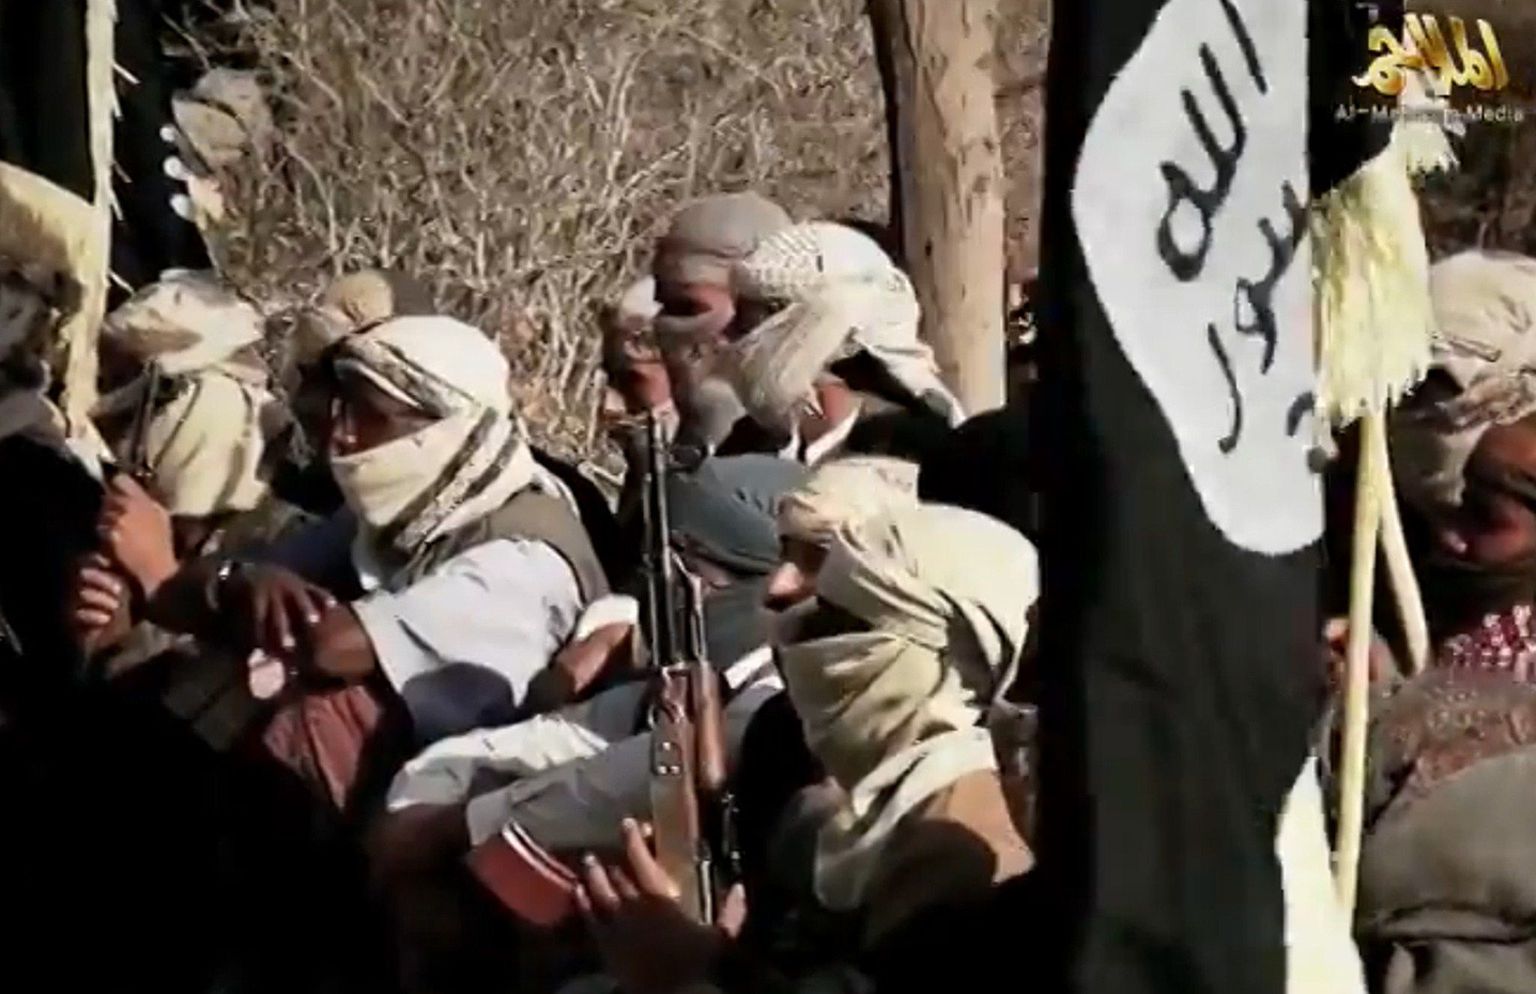 Al-Qaeda meediaväljaande Al-Malahemi mõned aastad tagasi avaldatud foto AQAP-i võitlejatest.